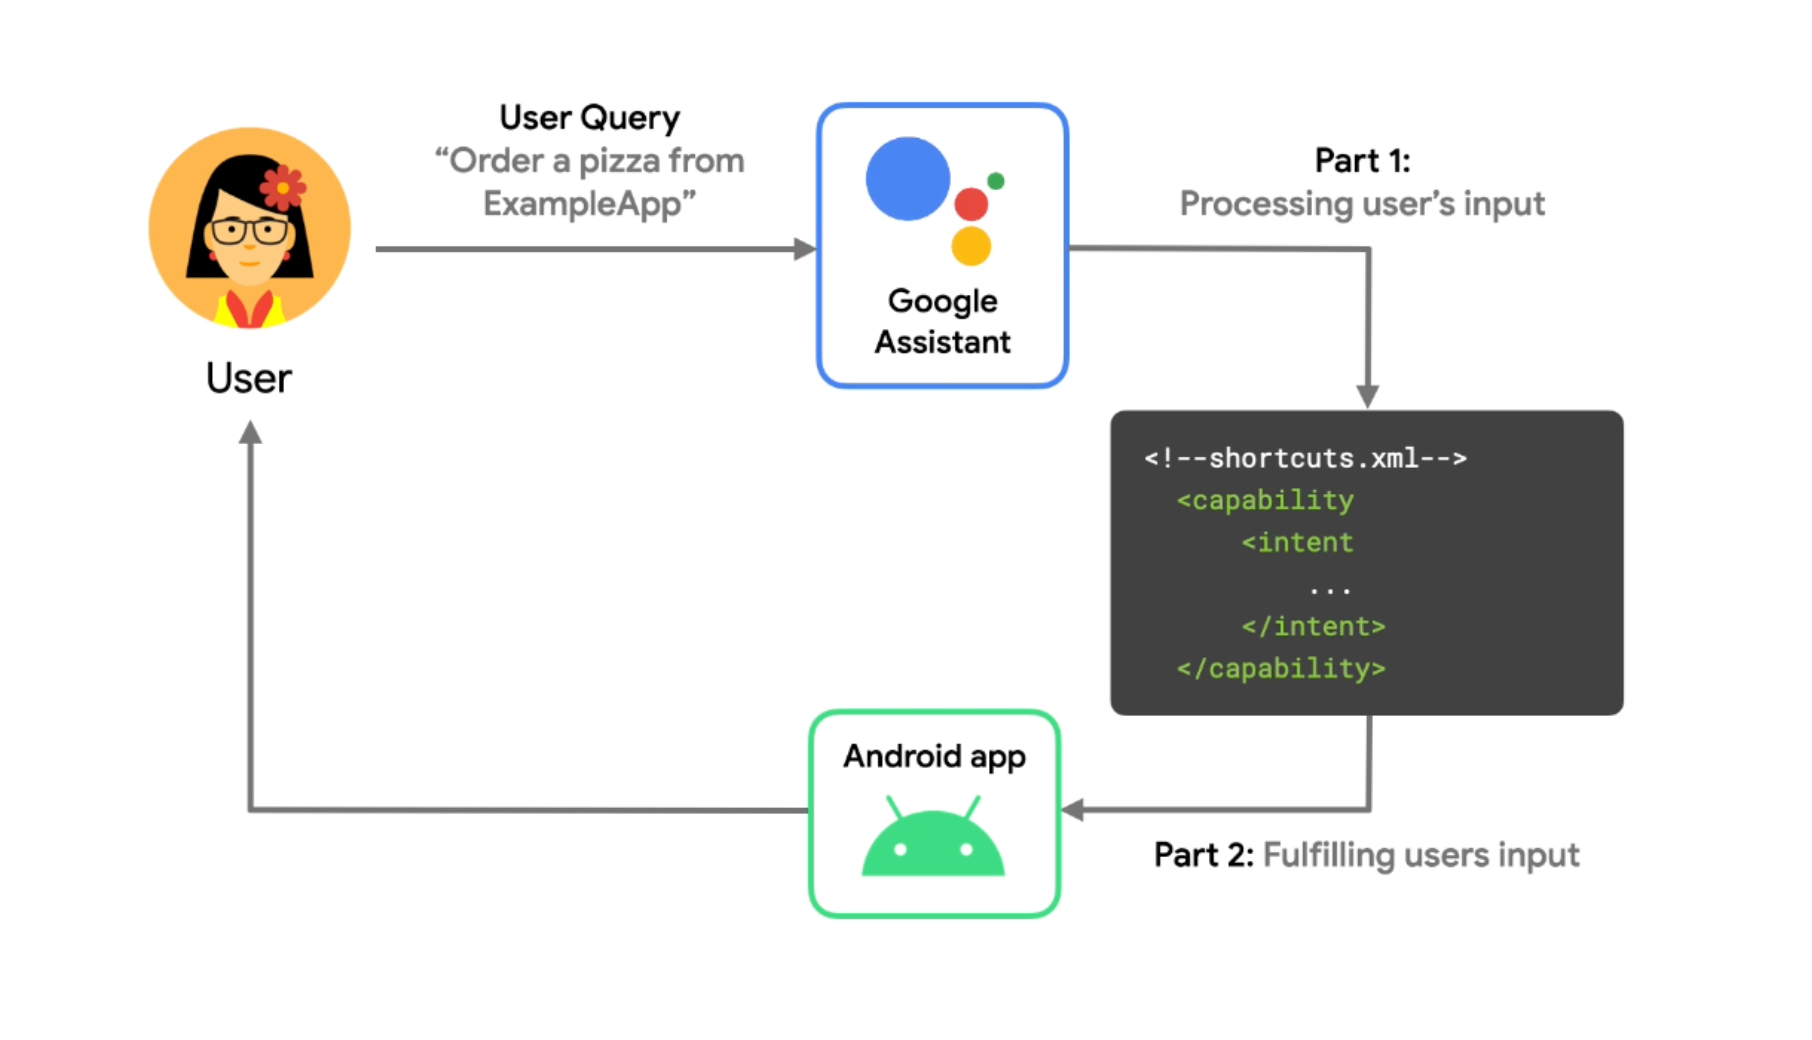 Google Assistente: o que é e como funciona o controle por voz do Android